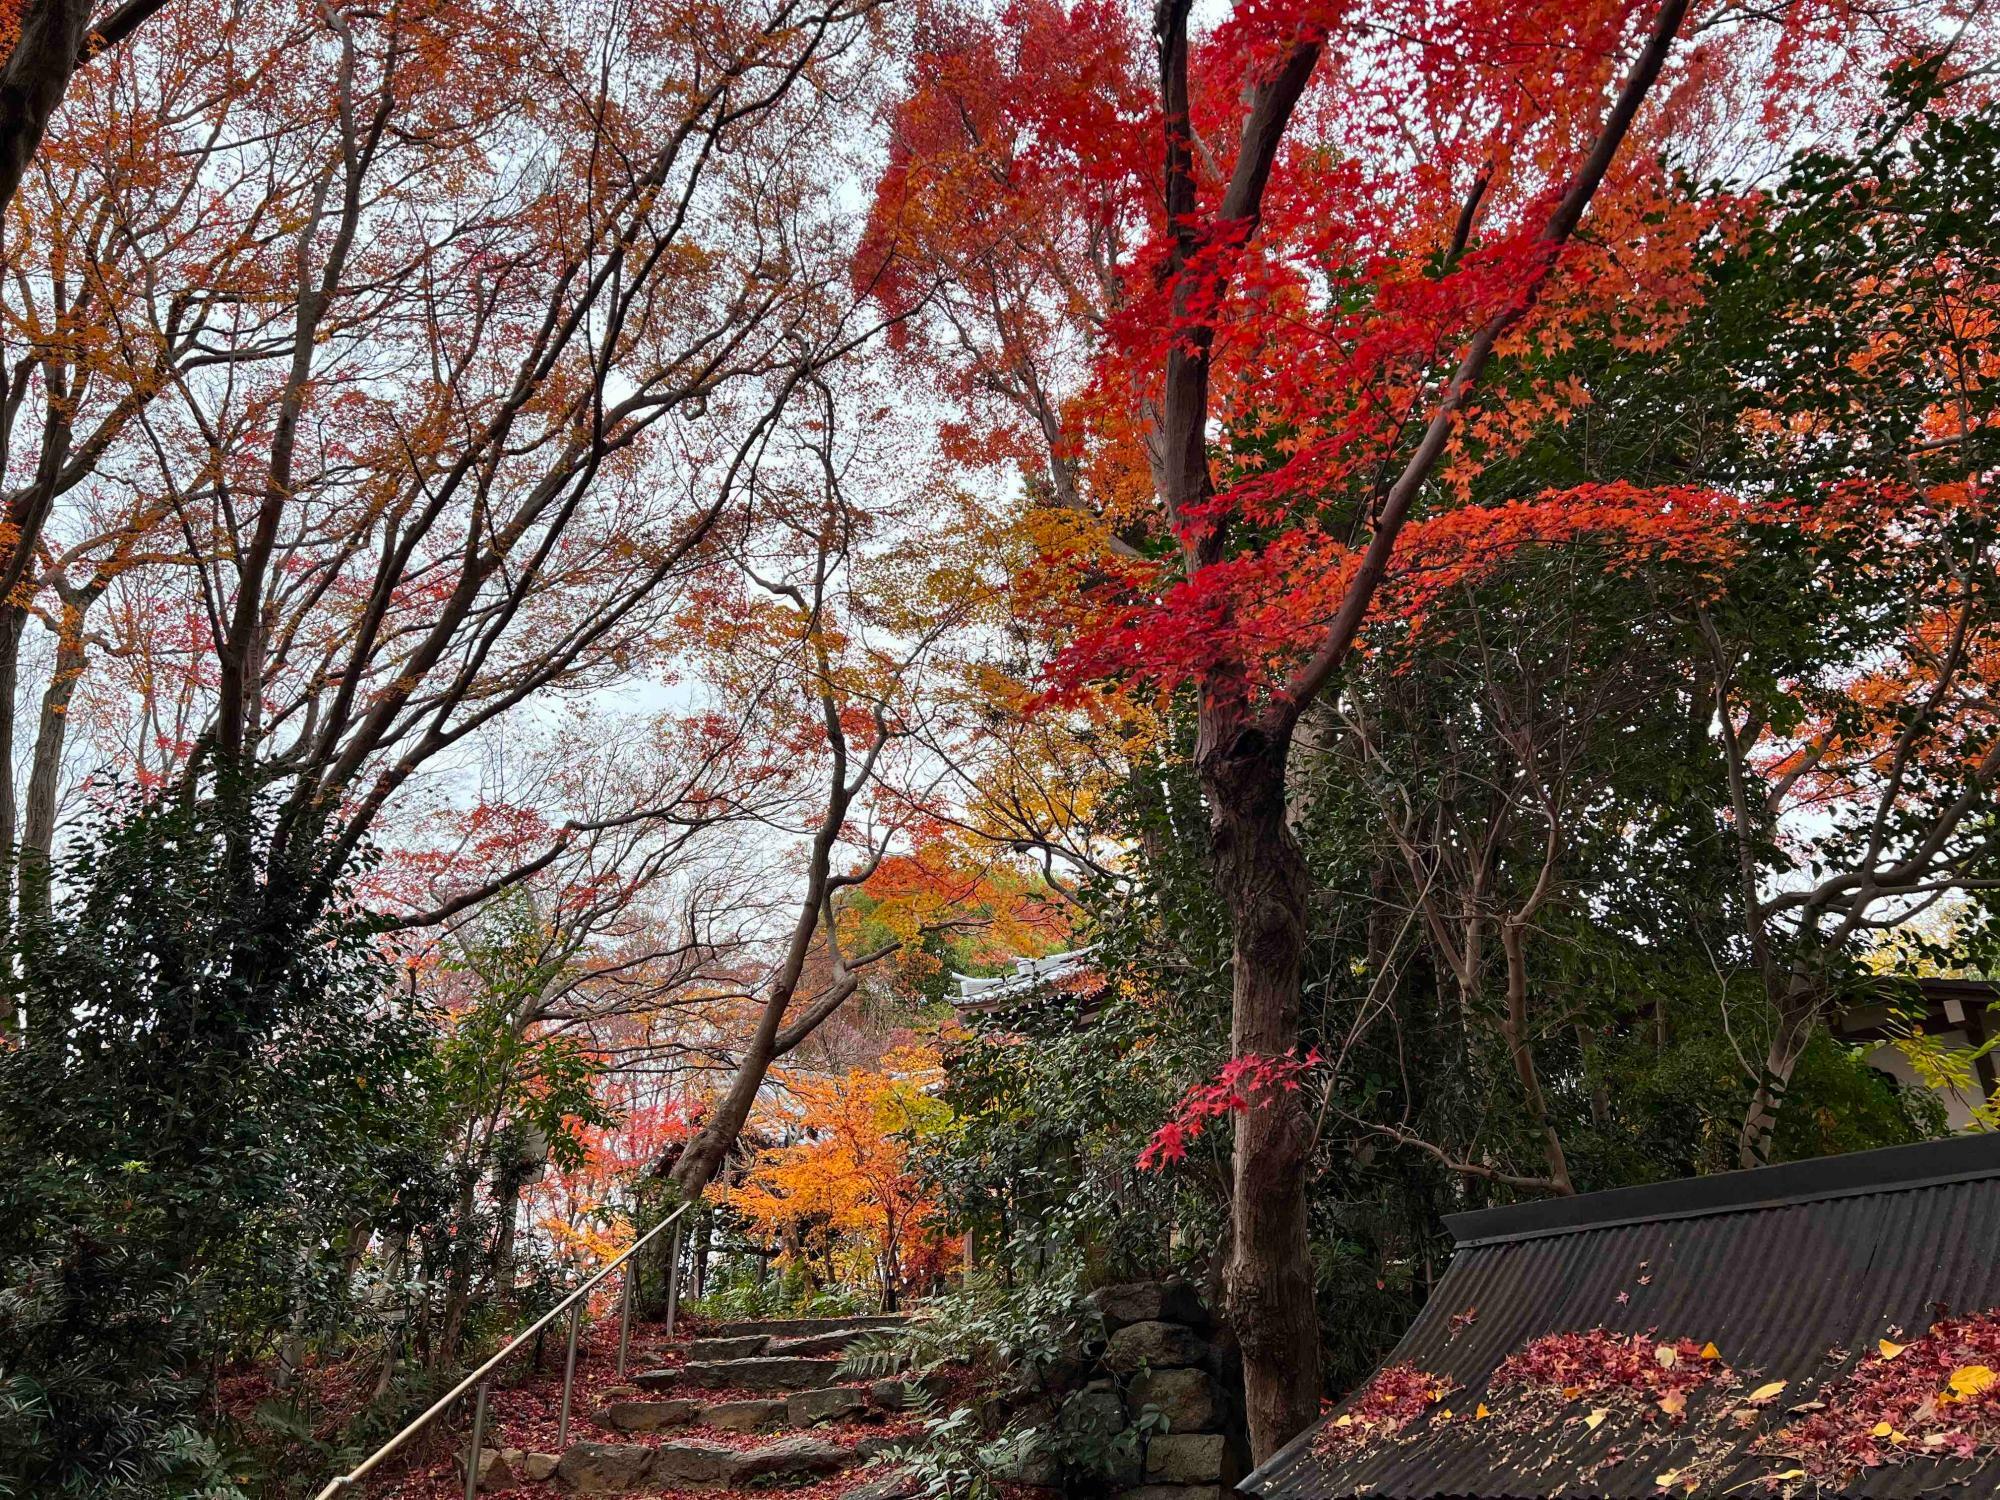 寺までもう一息のところに、真っ赤な葉をつけたカエデの木がありました